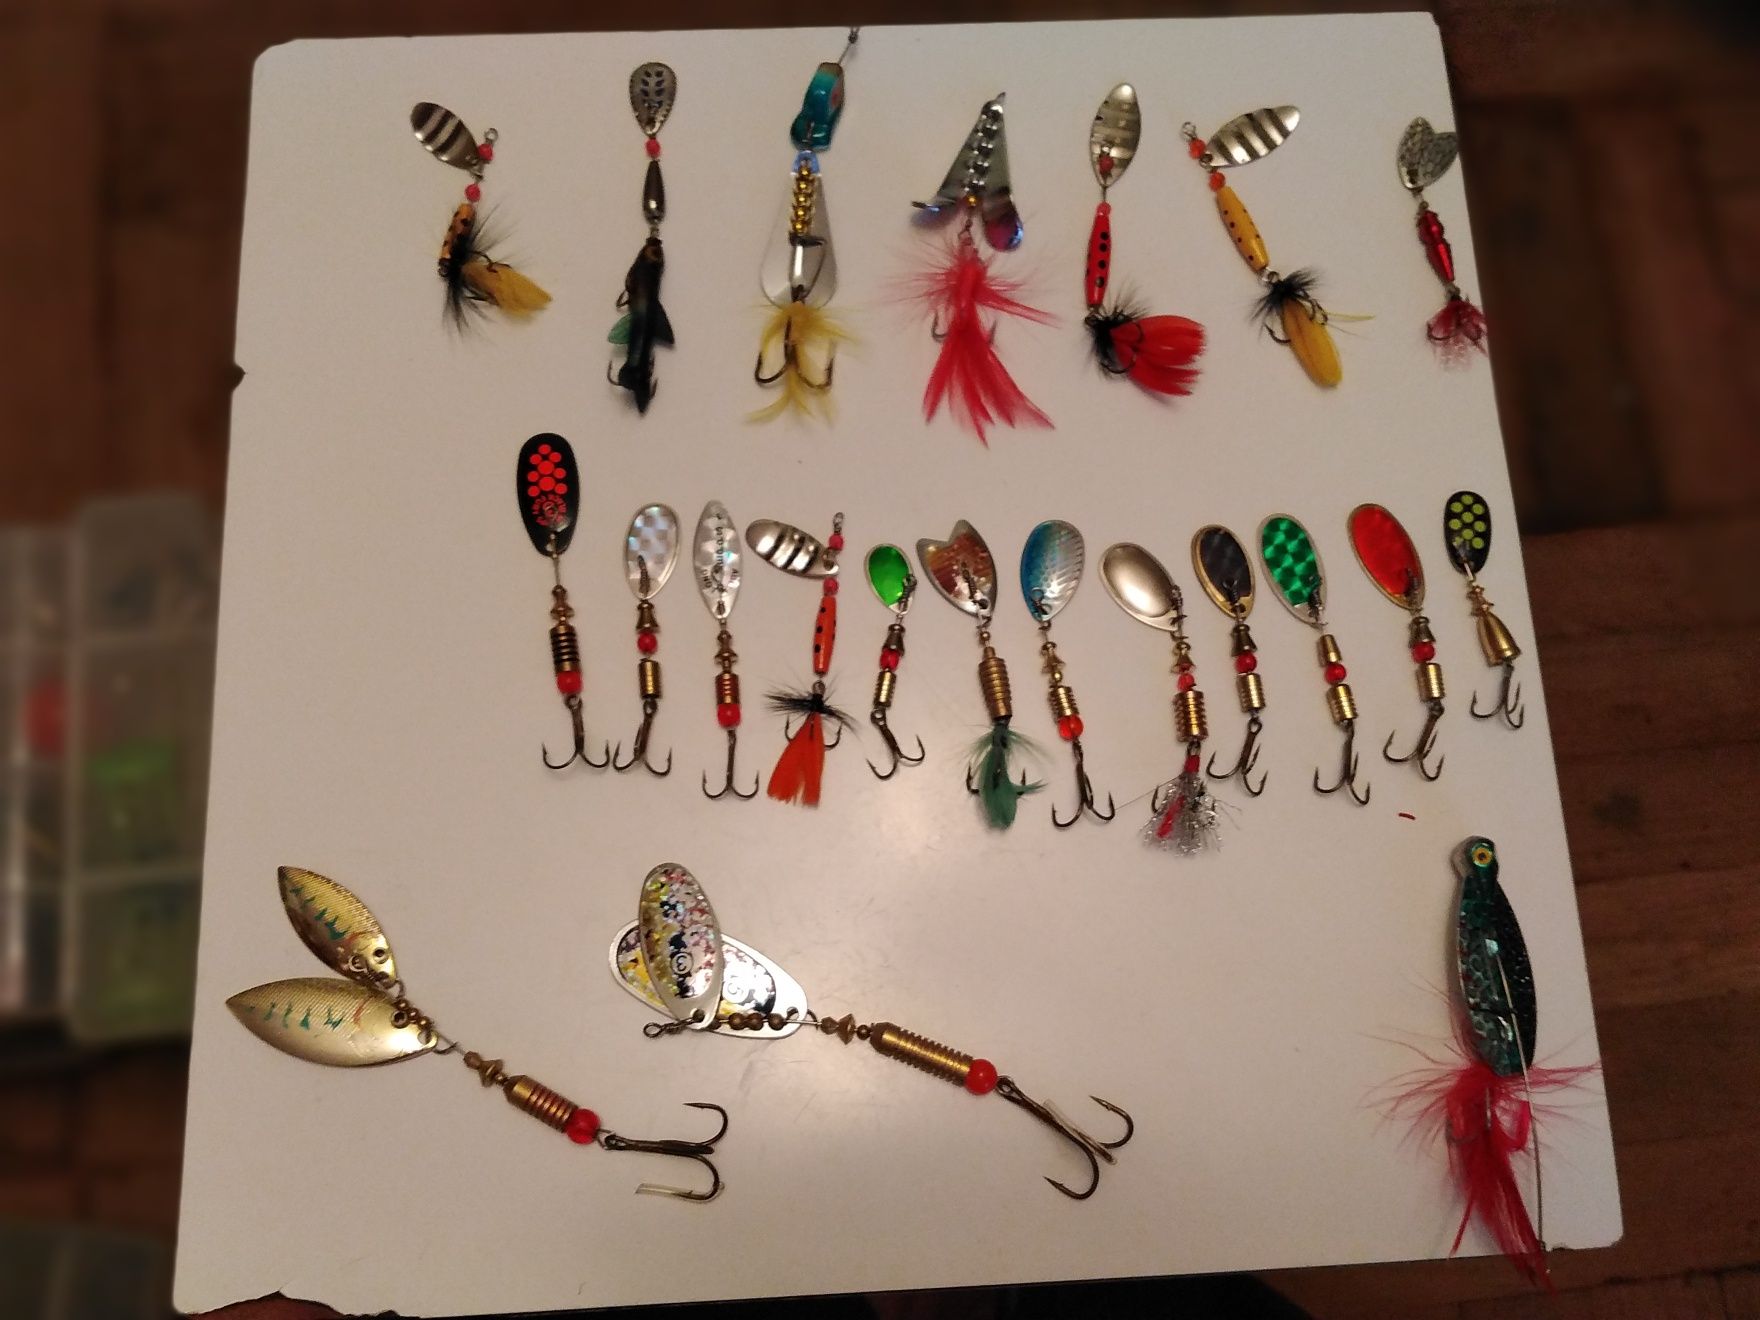 Pescuit Voblere și accesorii